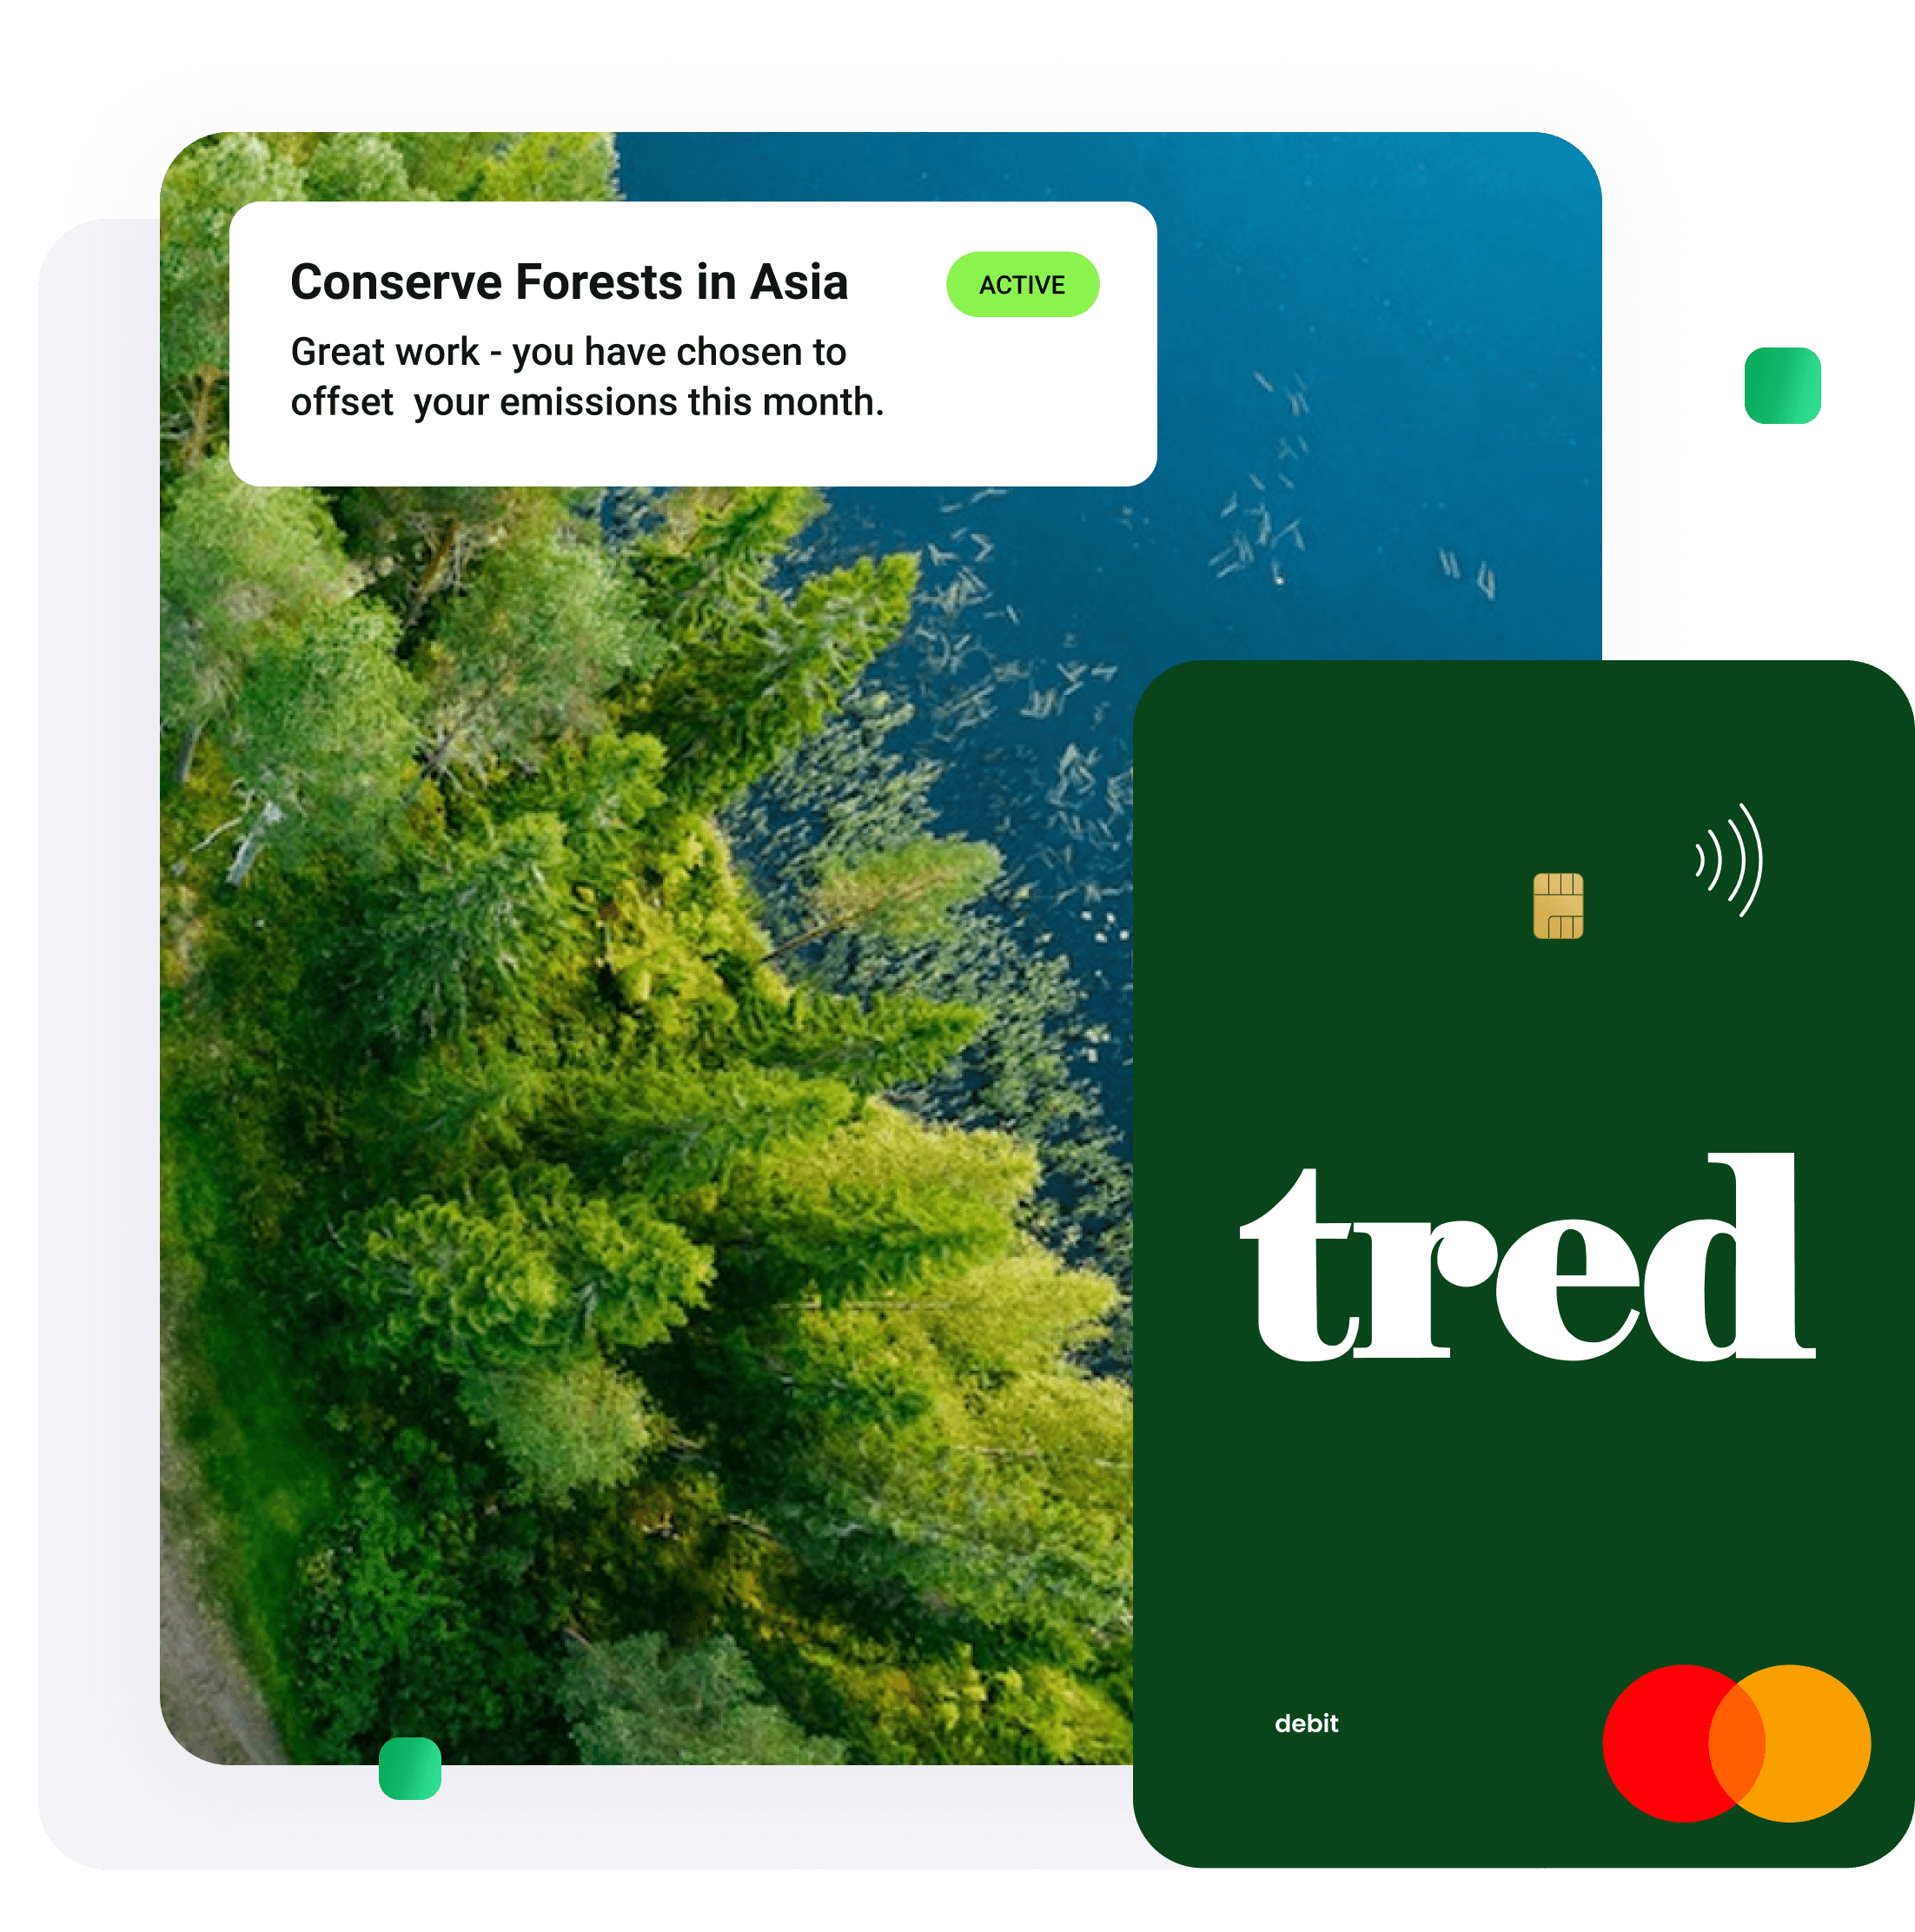 Tred’s green debit card